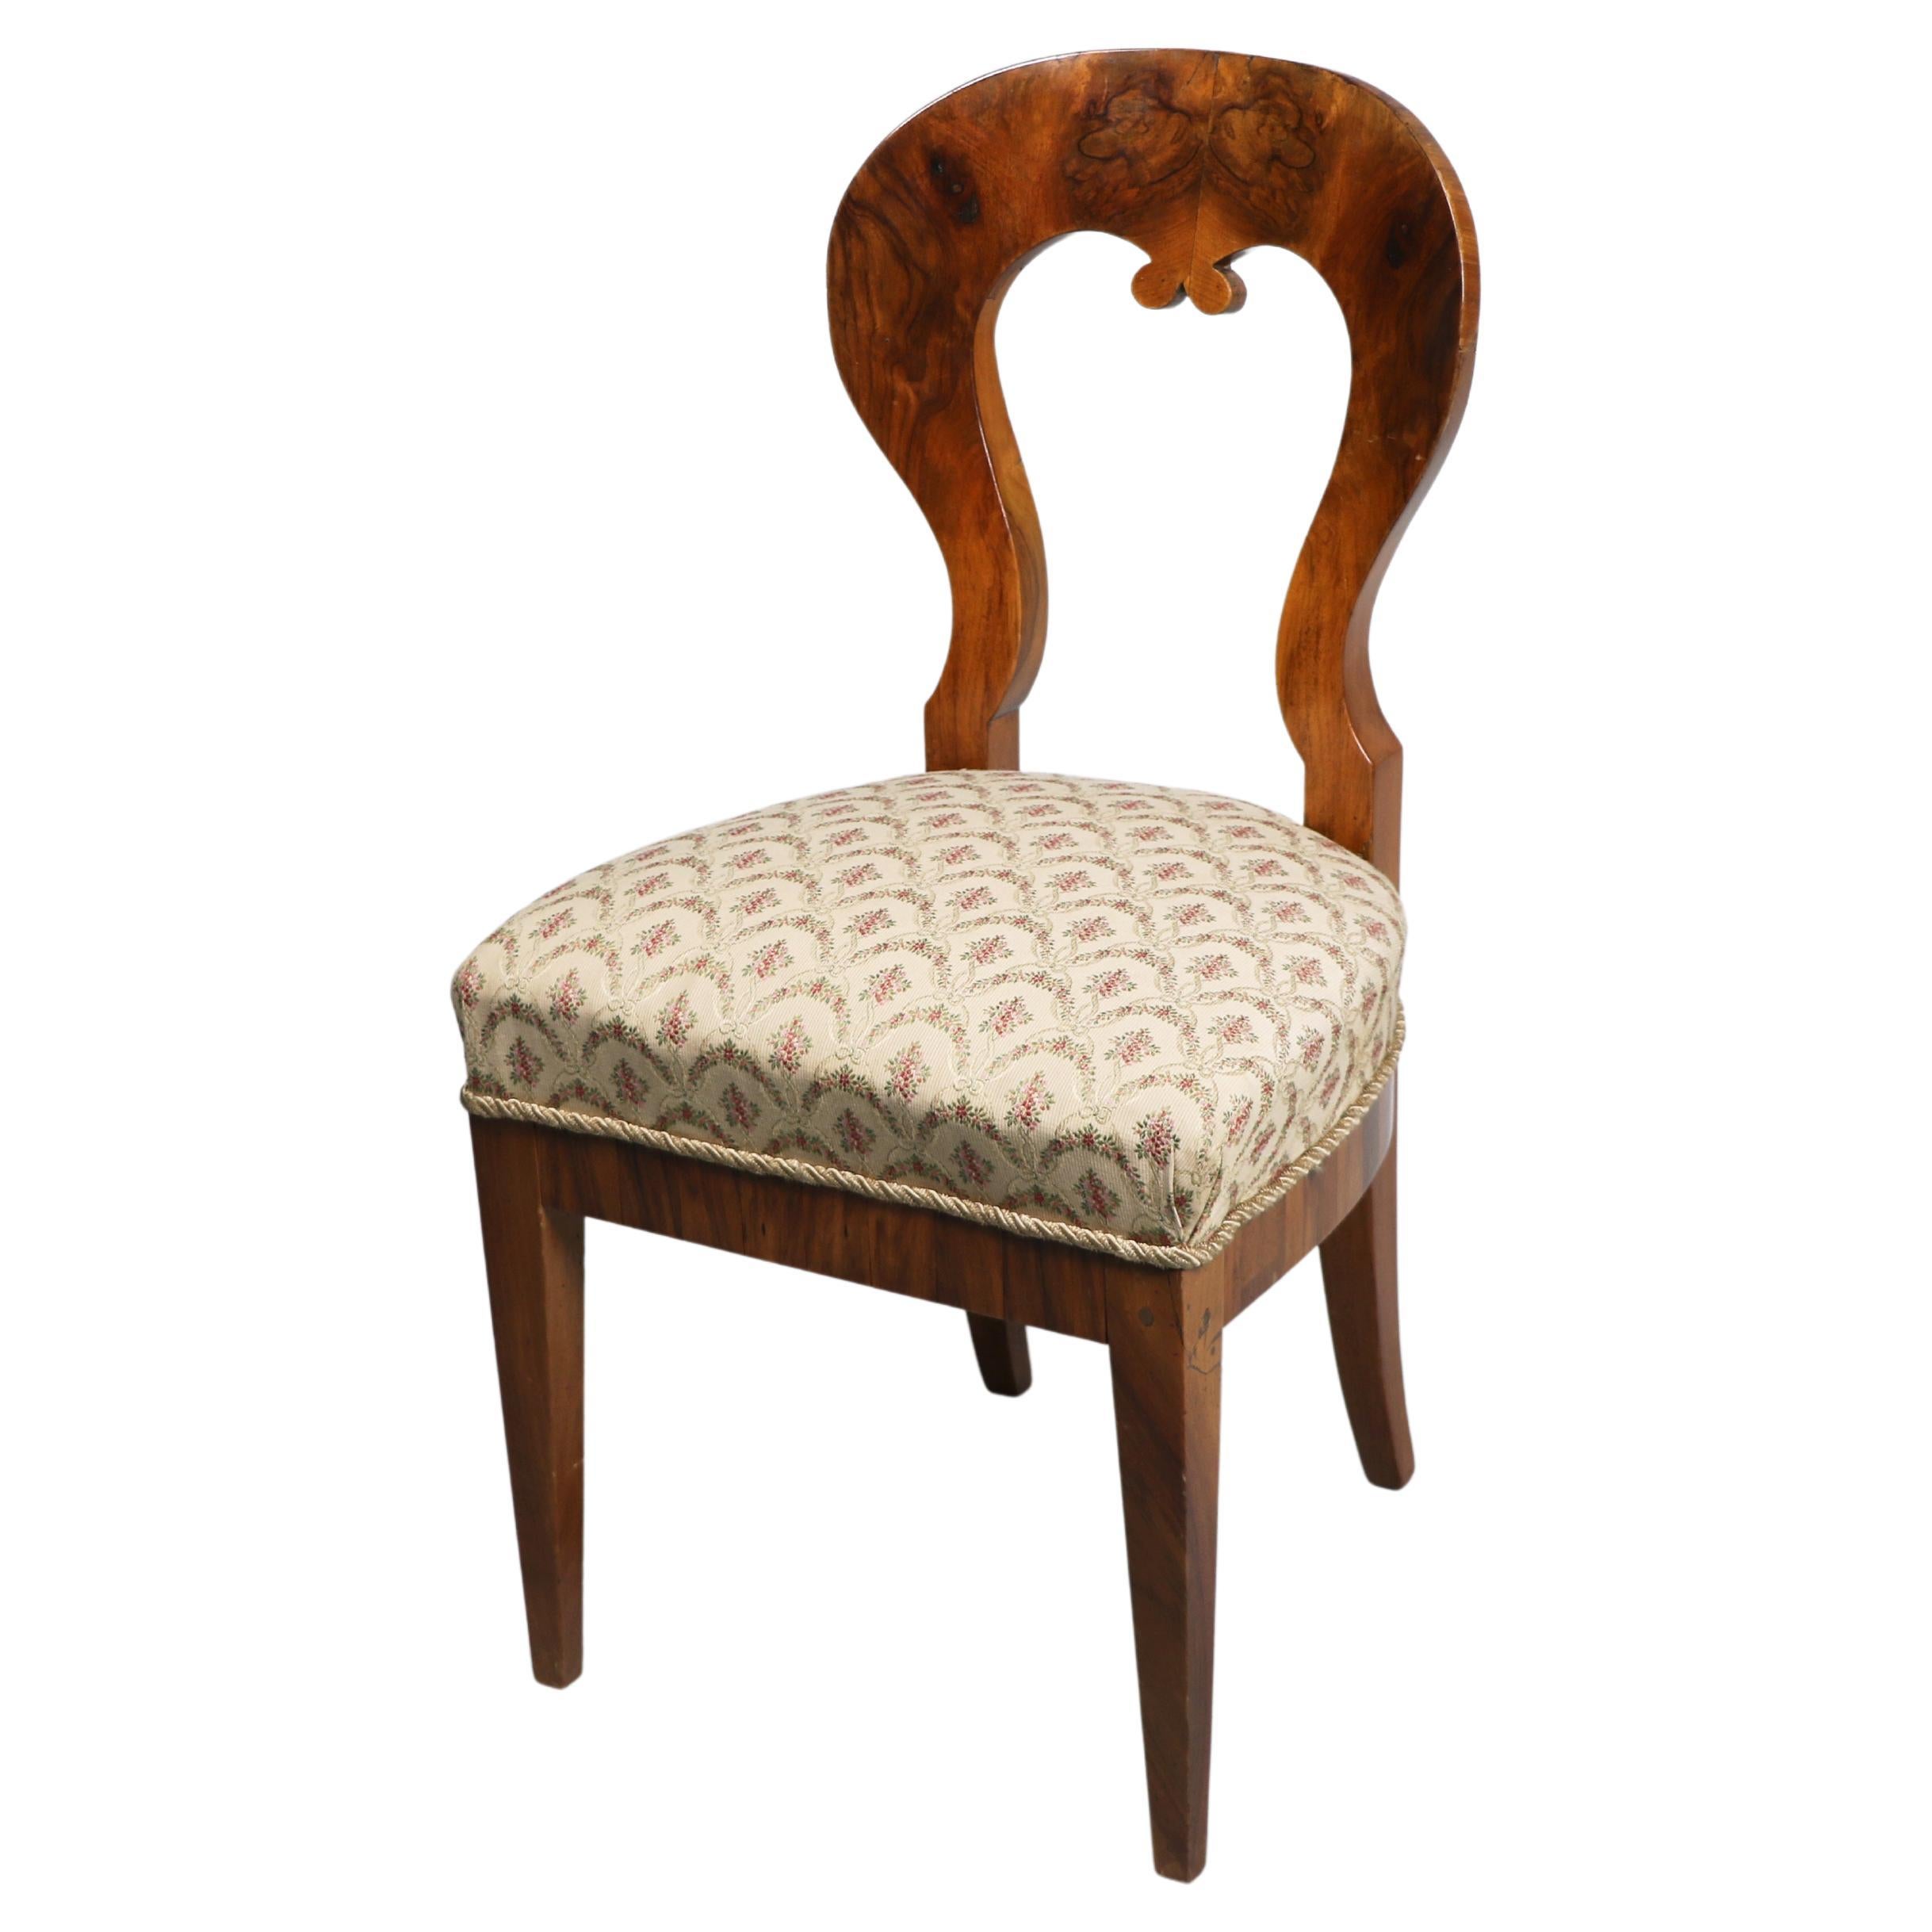 19th Century Biedermeier Walnut Chair. Vienna, c. 1825